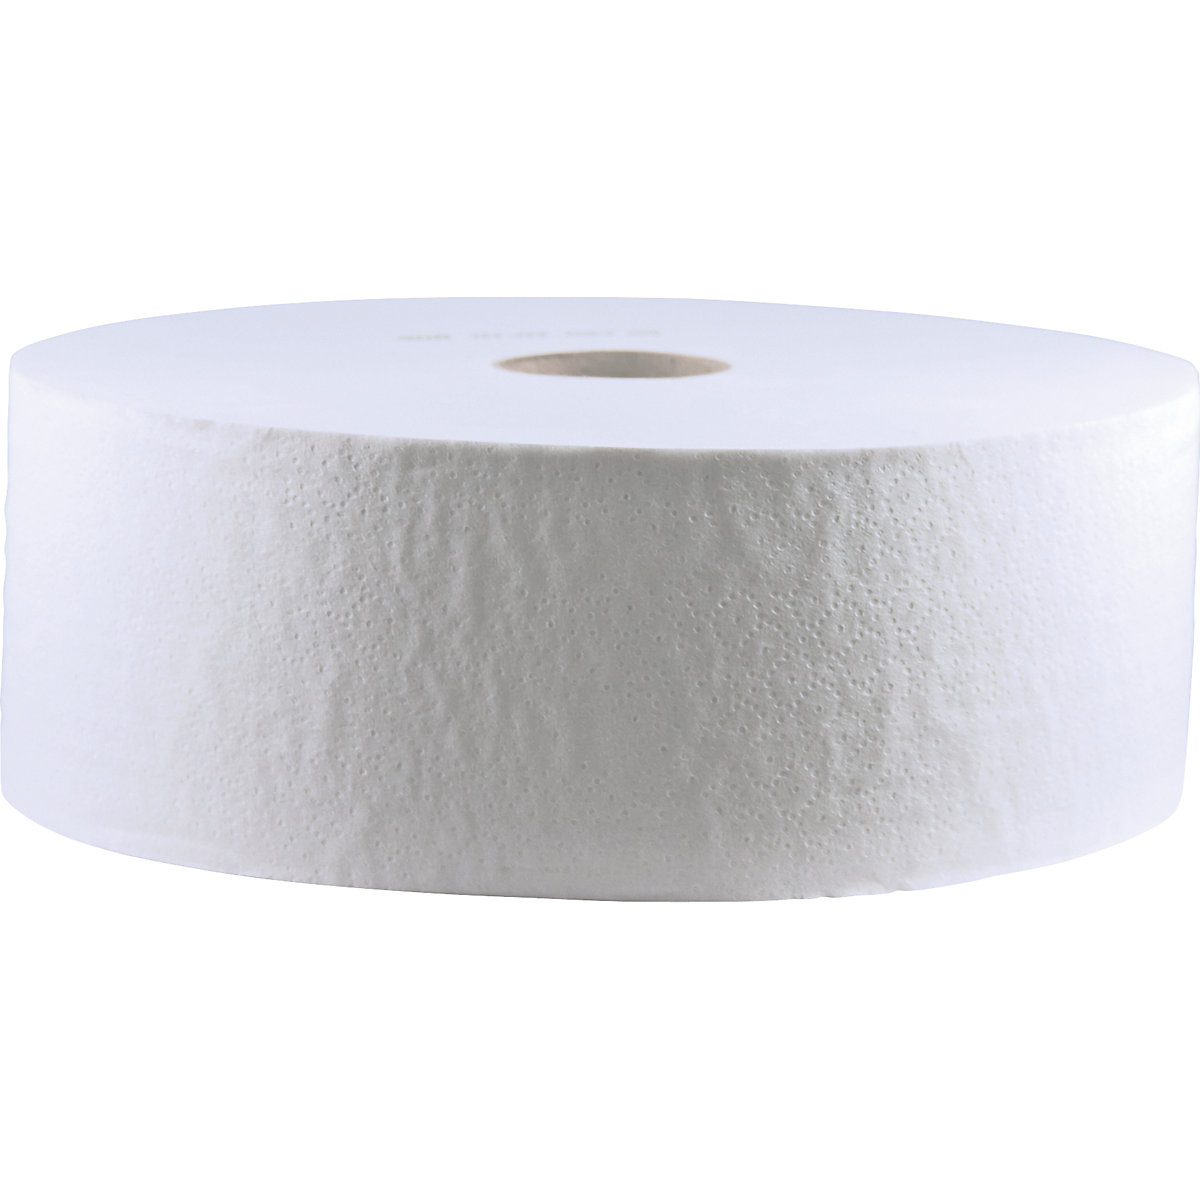 Velike role toaletnog papira od celuloze - CWS